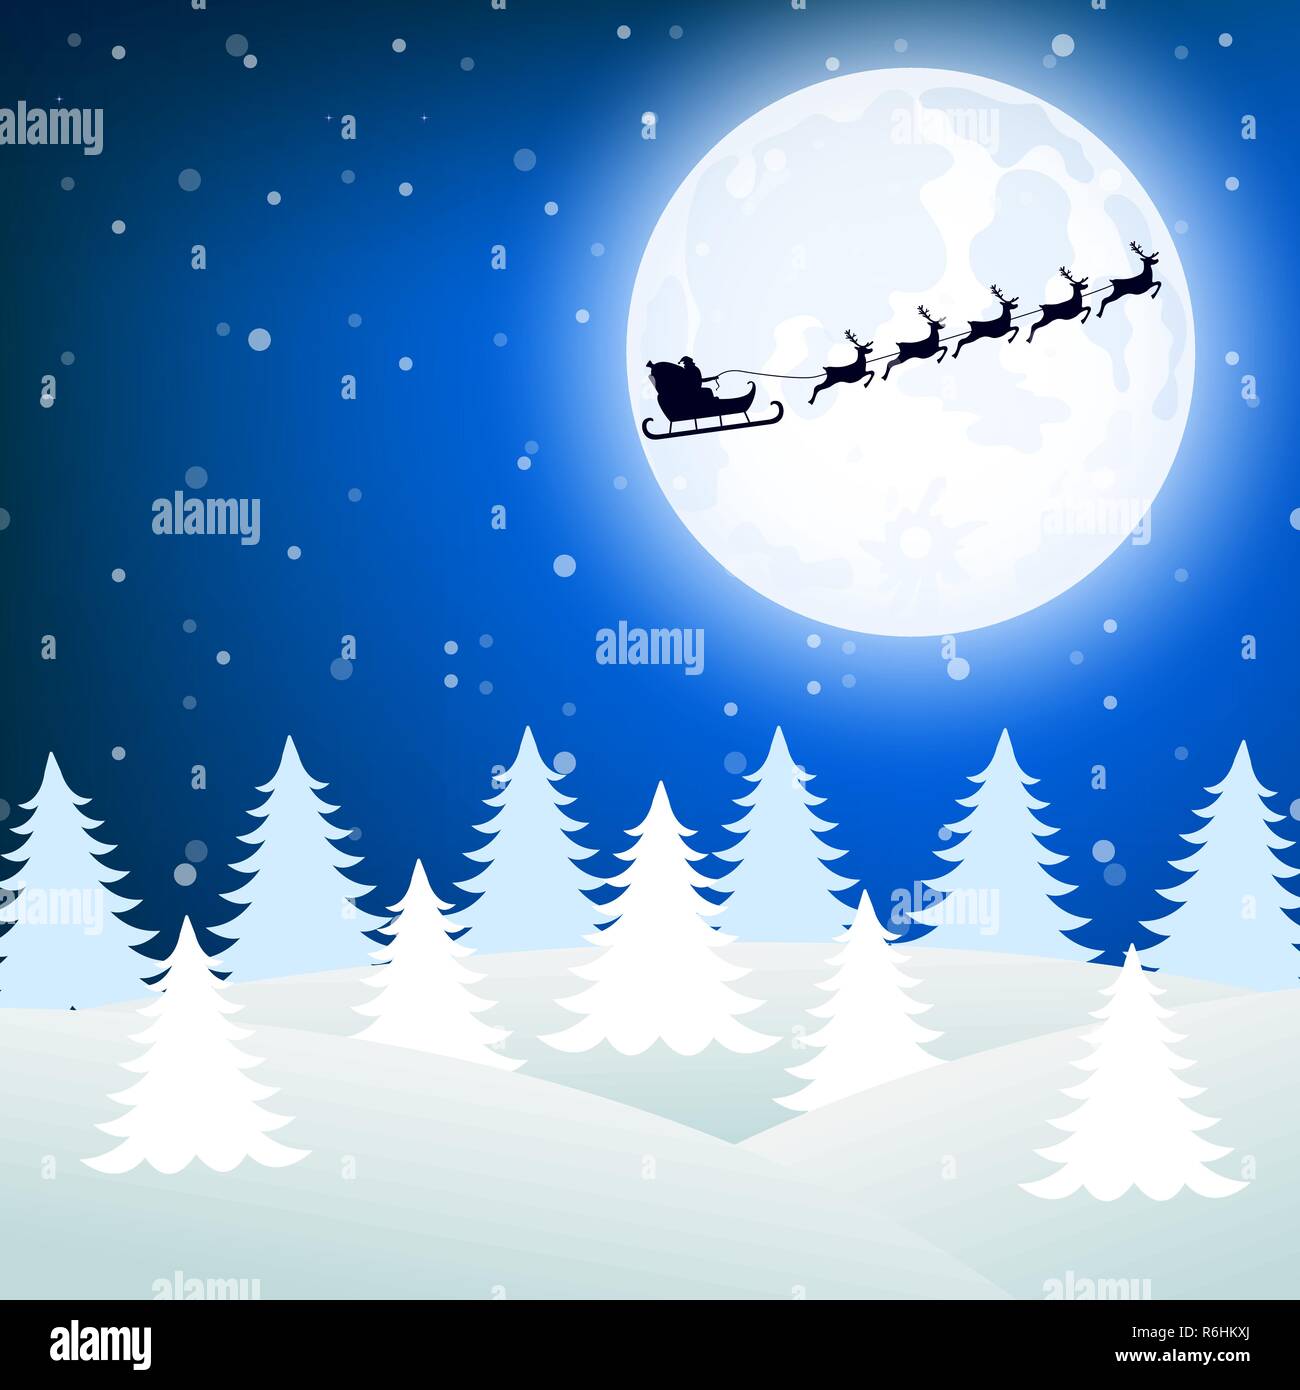 WalMart Christmas Santa Sleigh Full Moon Silhouette 2013 Gift Card FD-36221